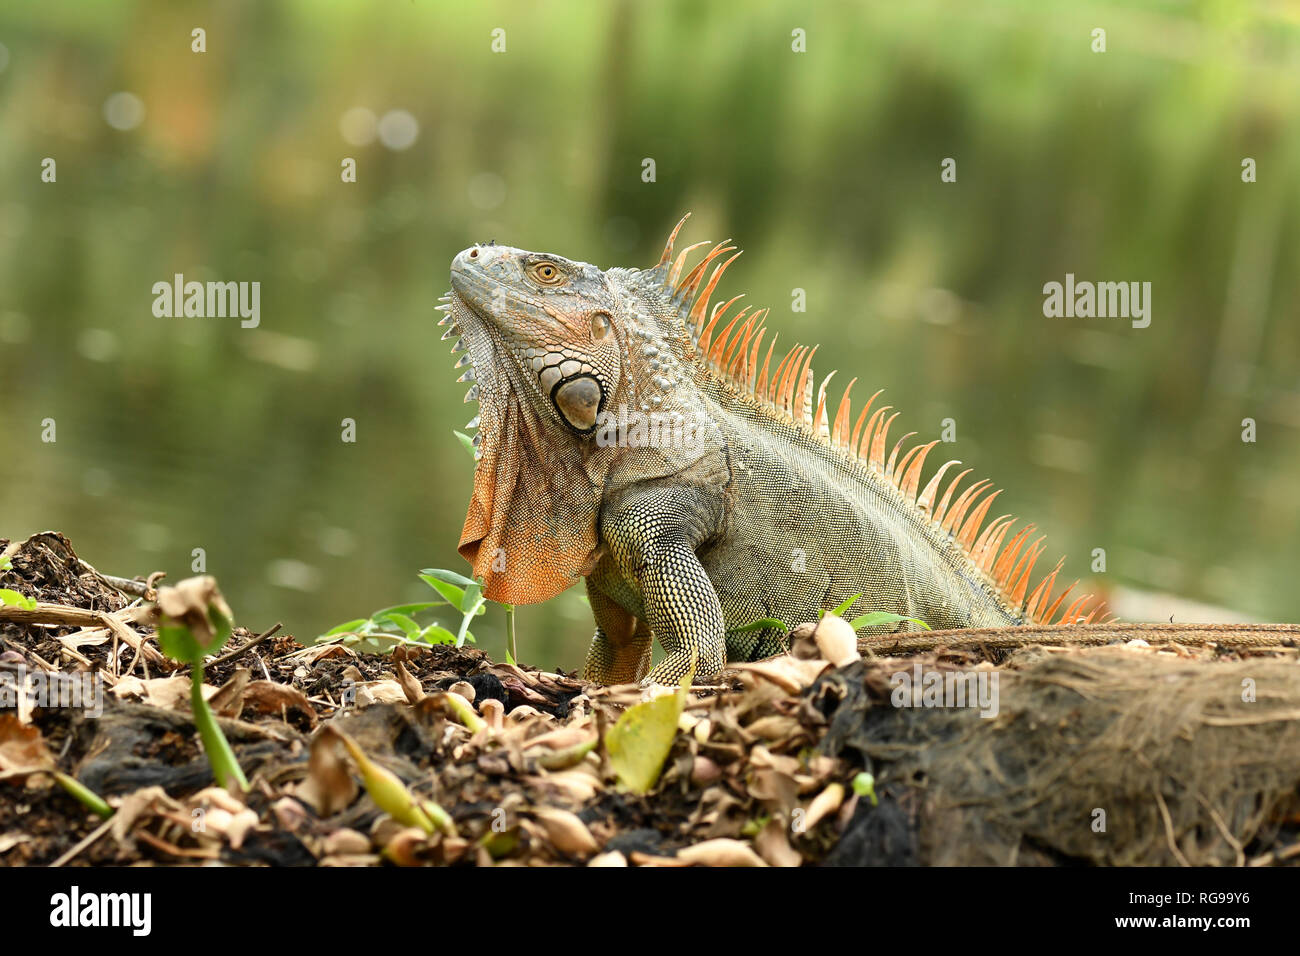 Comune o verde (Iguana Iguana iguana) maschio adulto nella riproduzione dei colori, Turrialba, Costa Rica, Ottobre Foto Stock